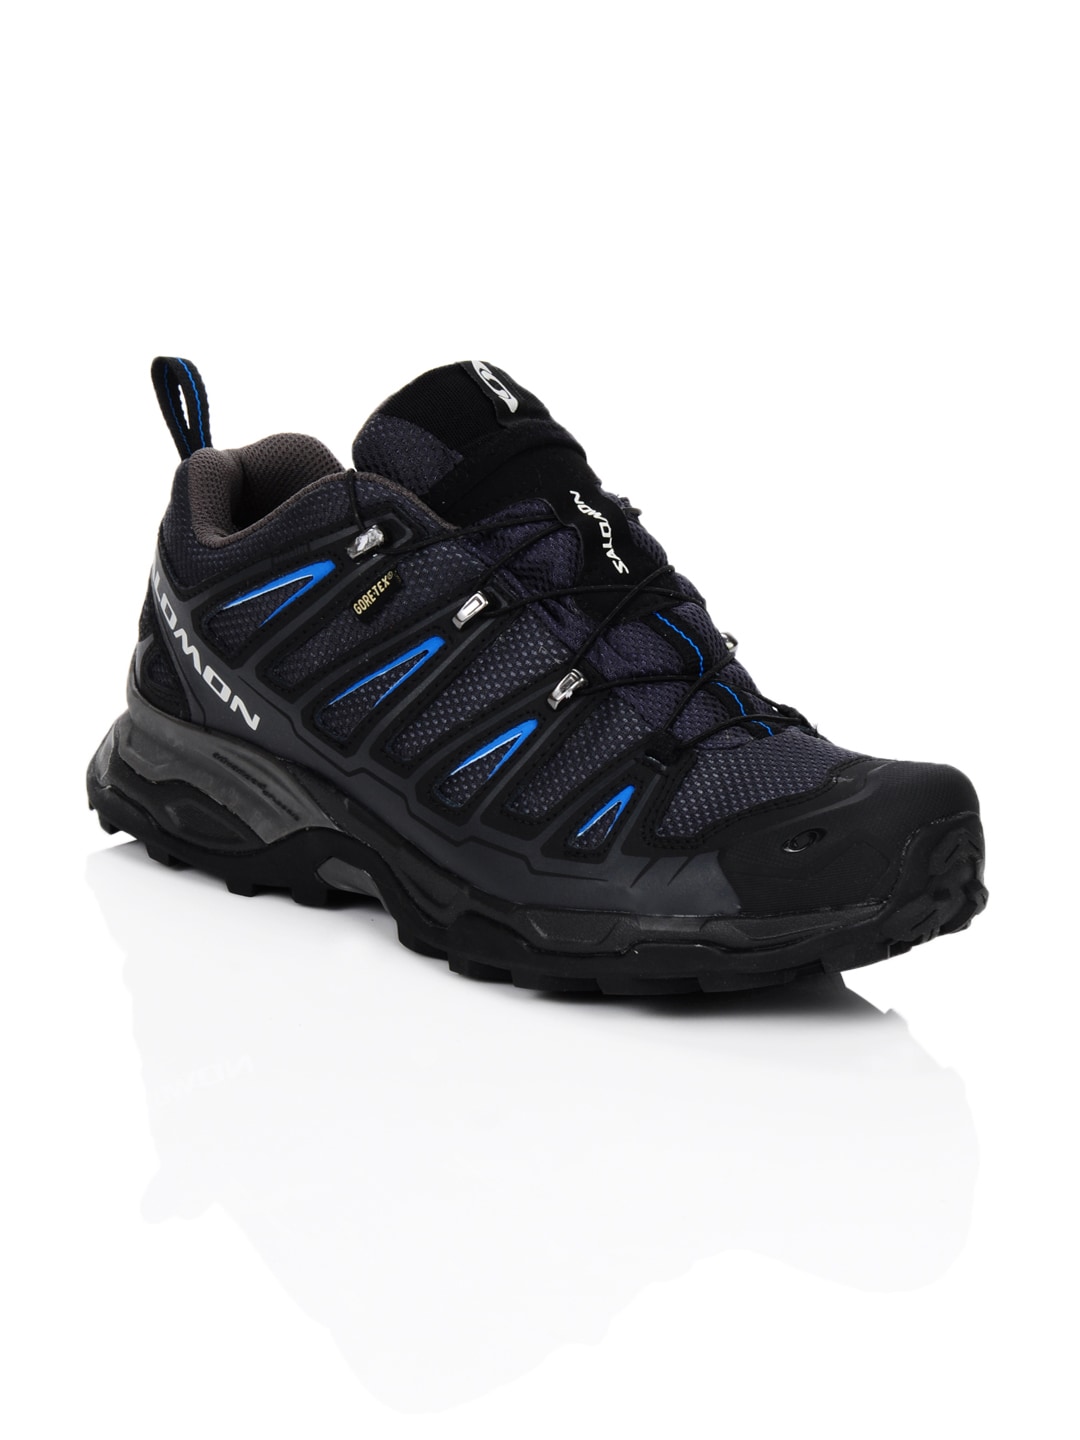 Salomon Men X Ultra GTX Black Sports Shoes